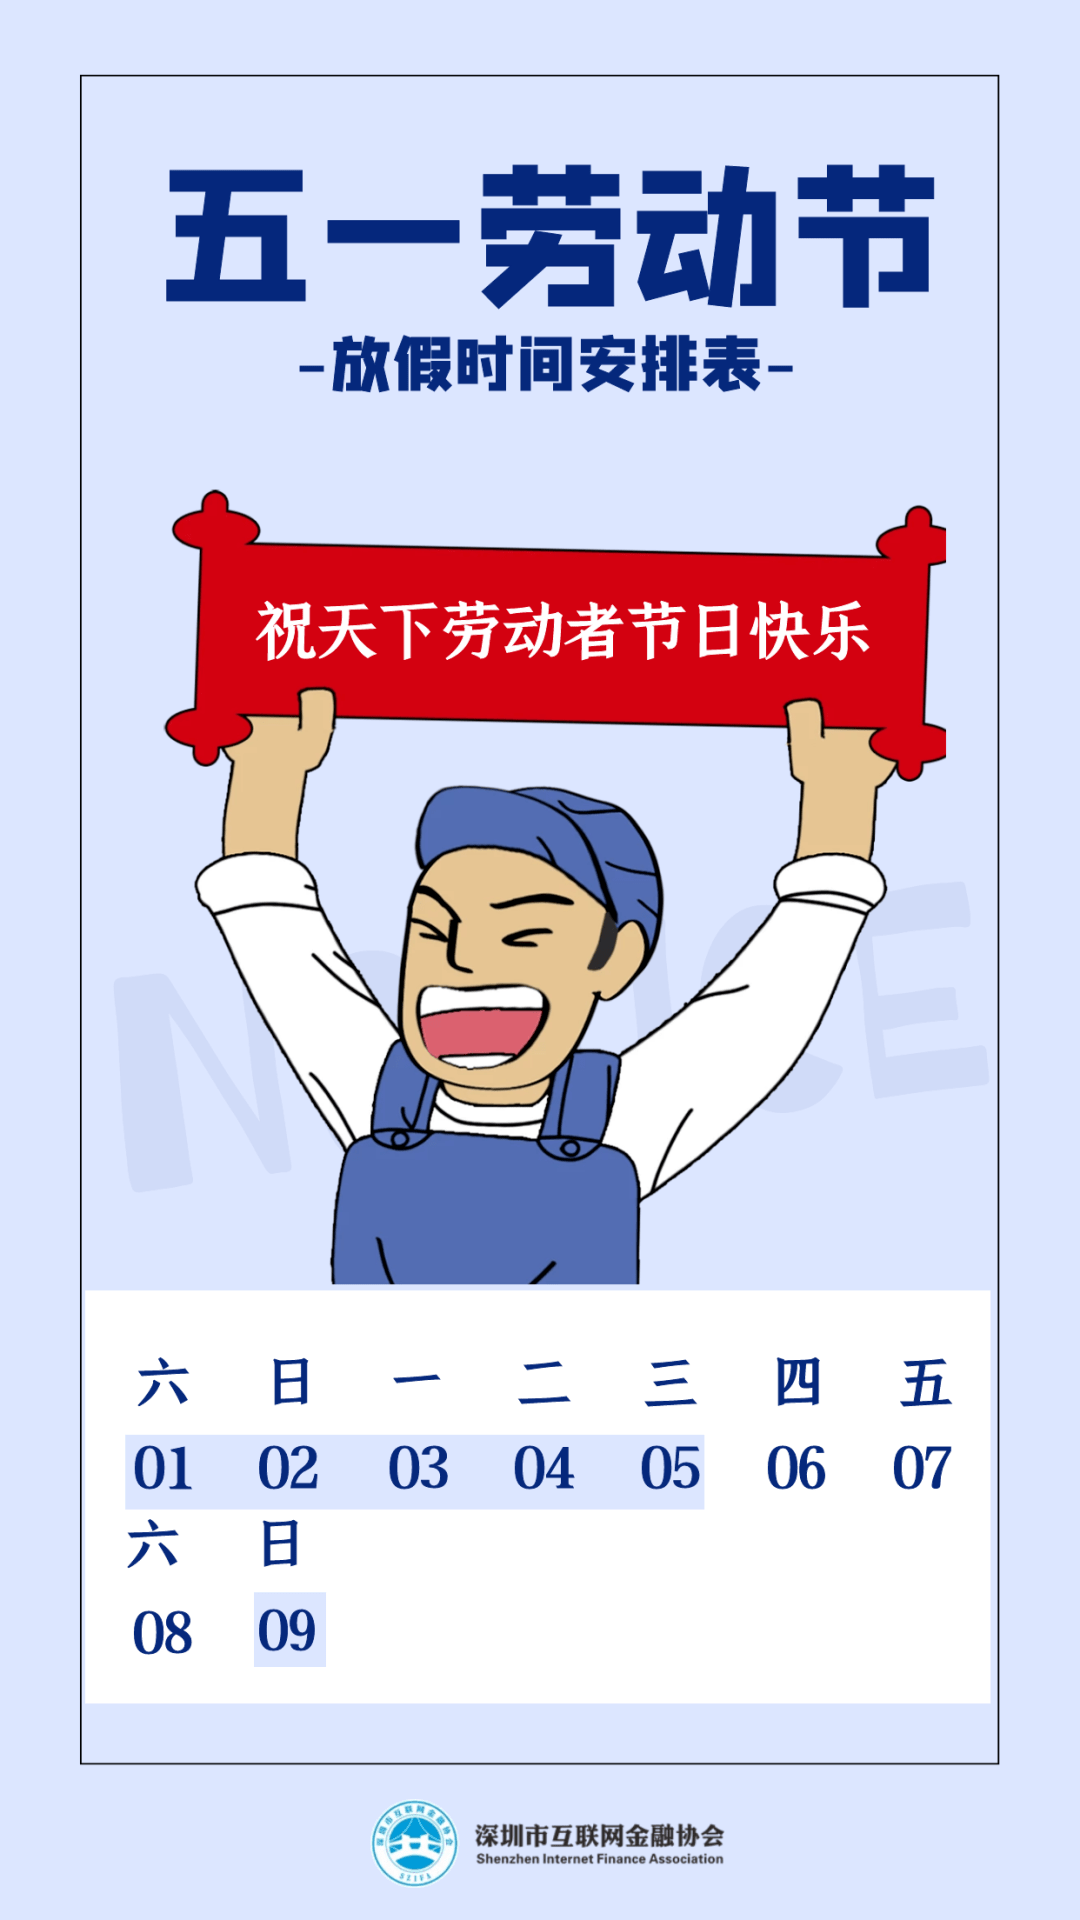 2021年五一劳动节放假通知,深圳市互联网金融协会五一假期具体安排如